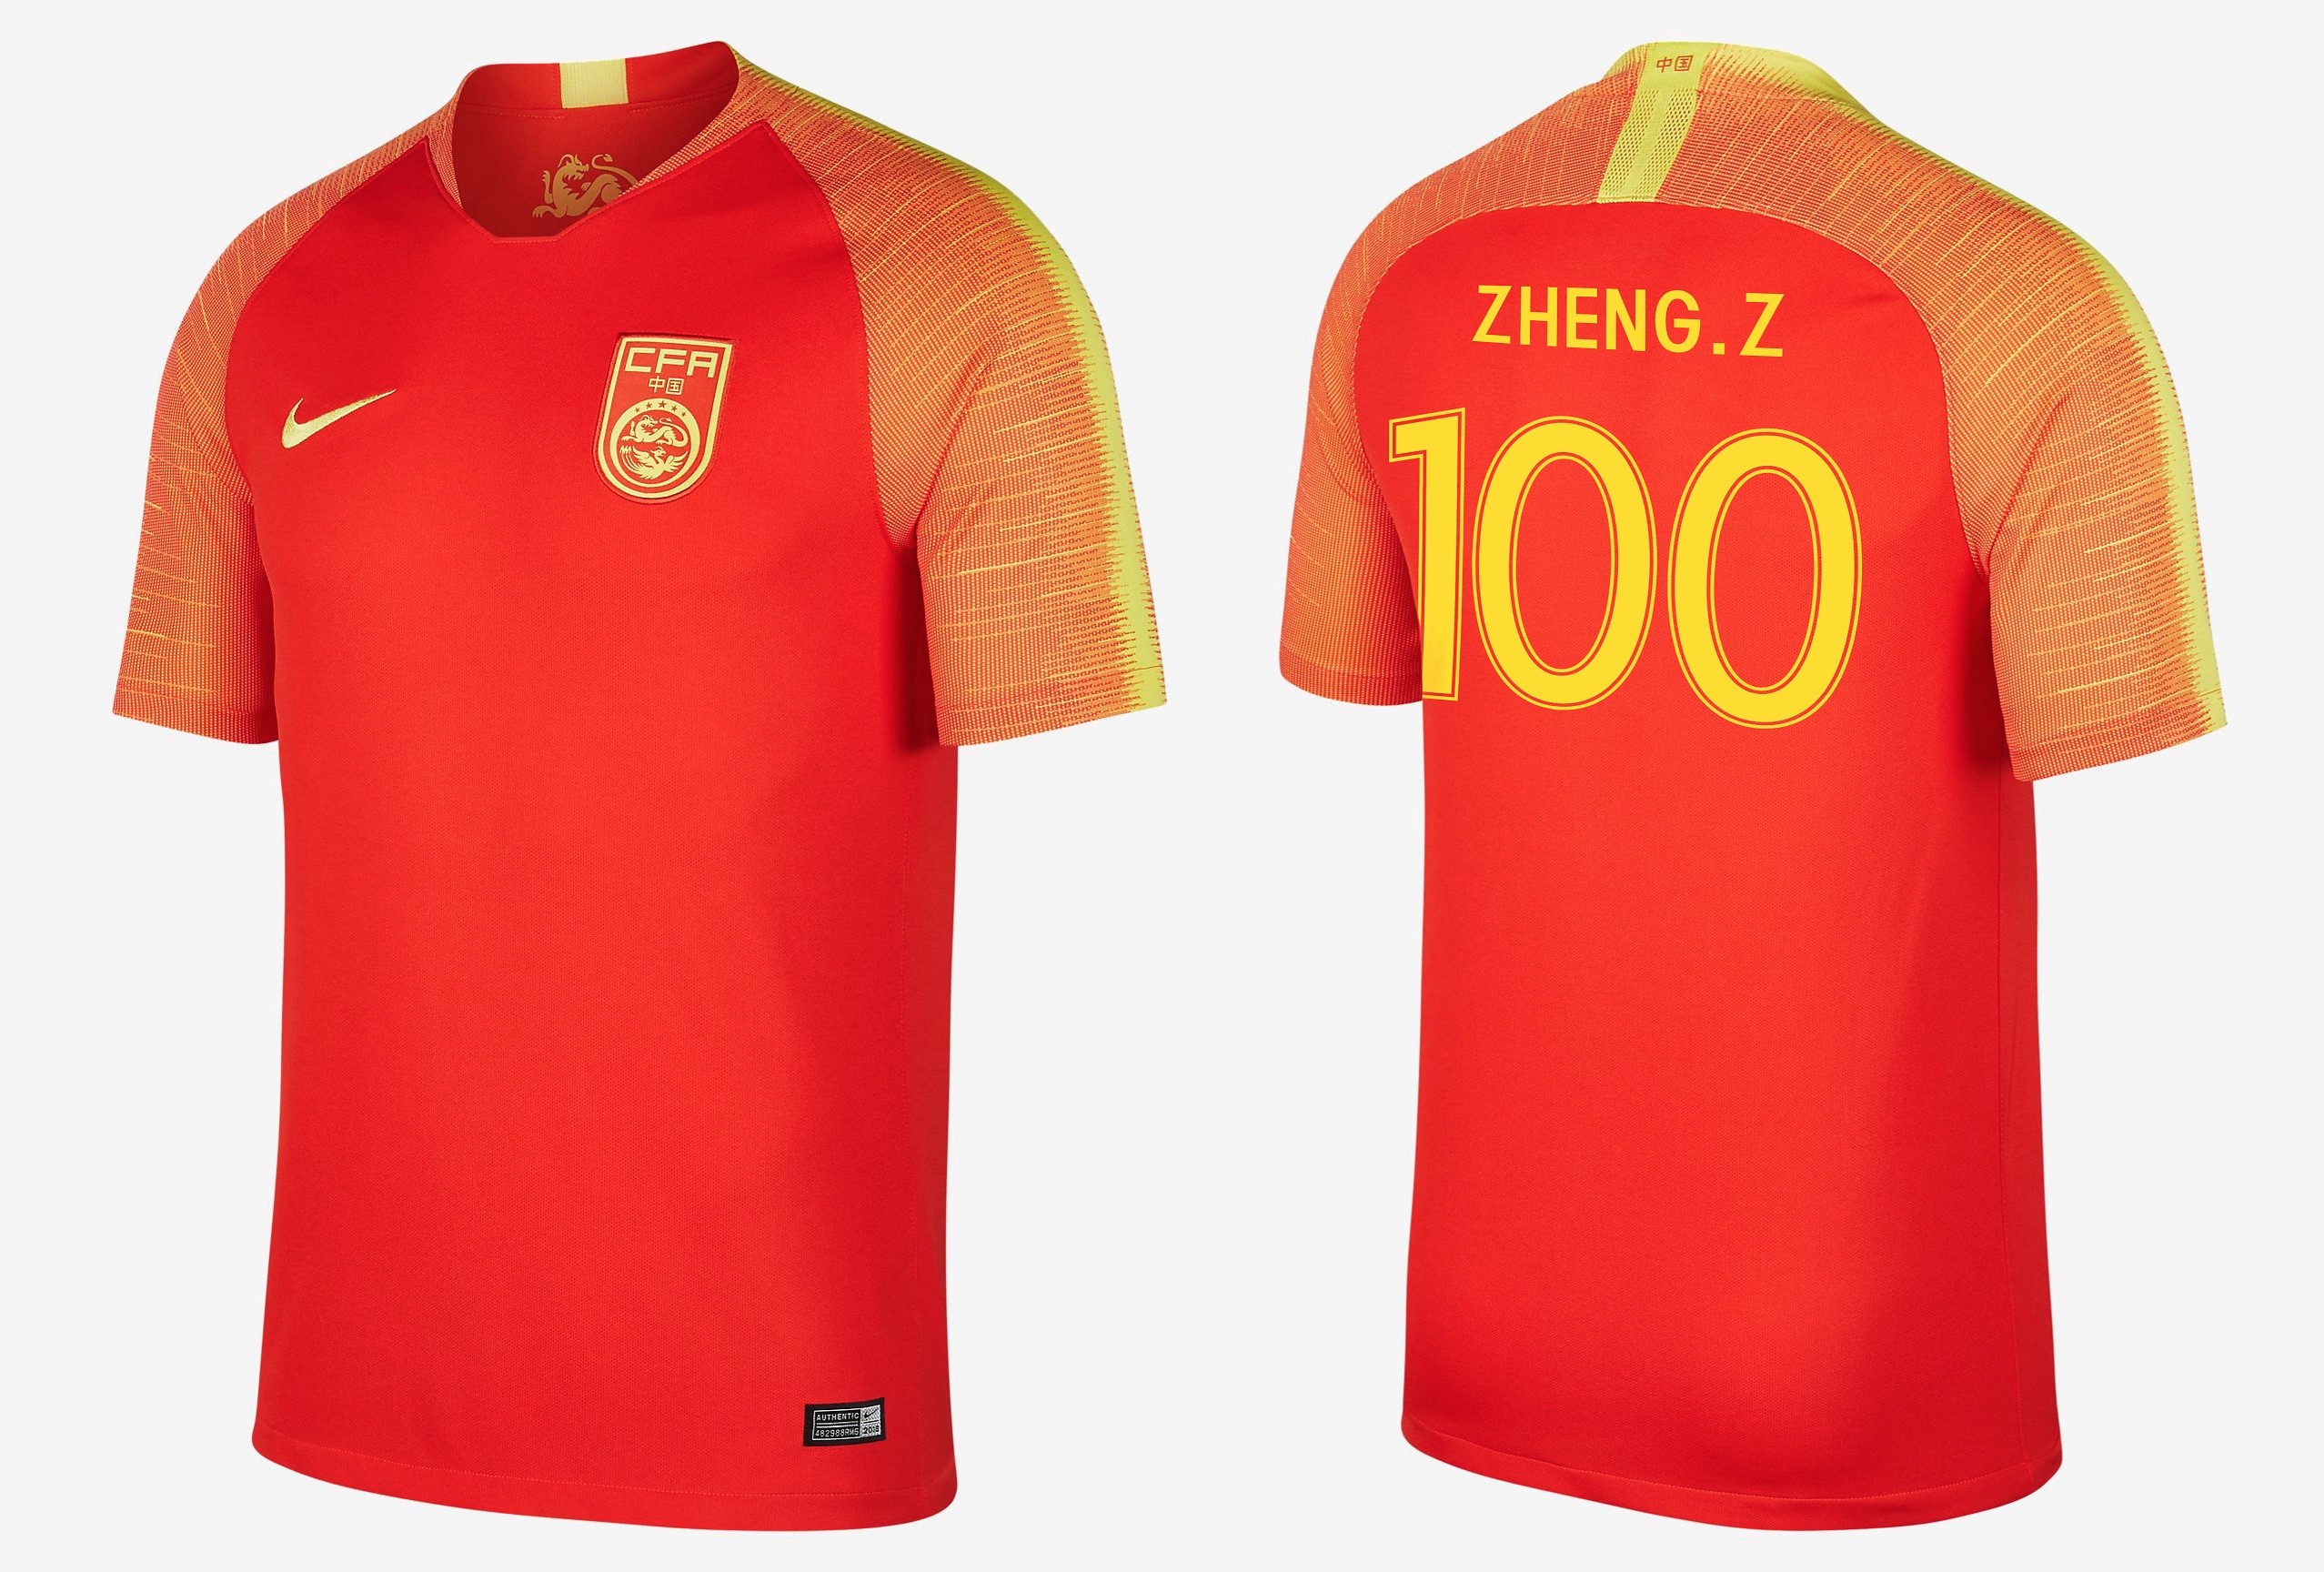 今天,中国国家男子足球队将在客场挑战泰国国家队